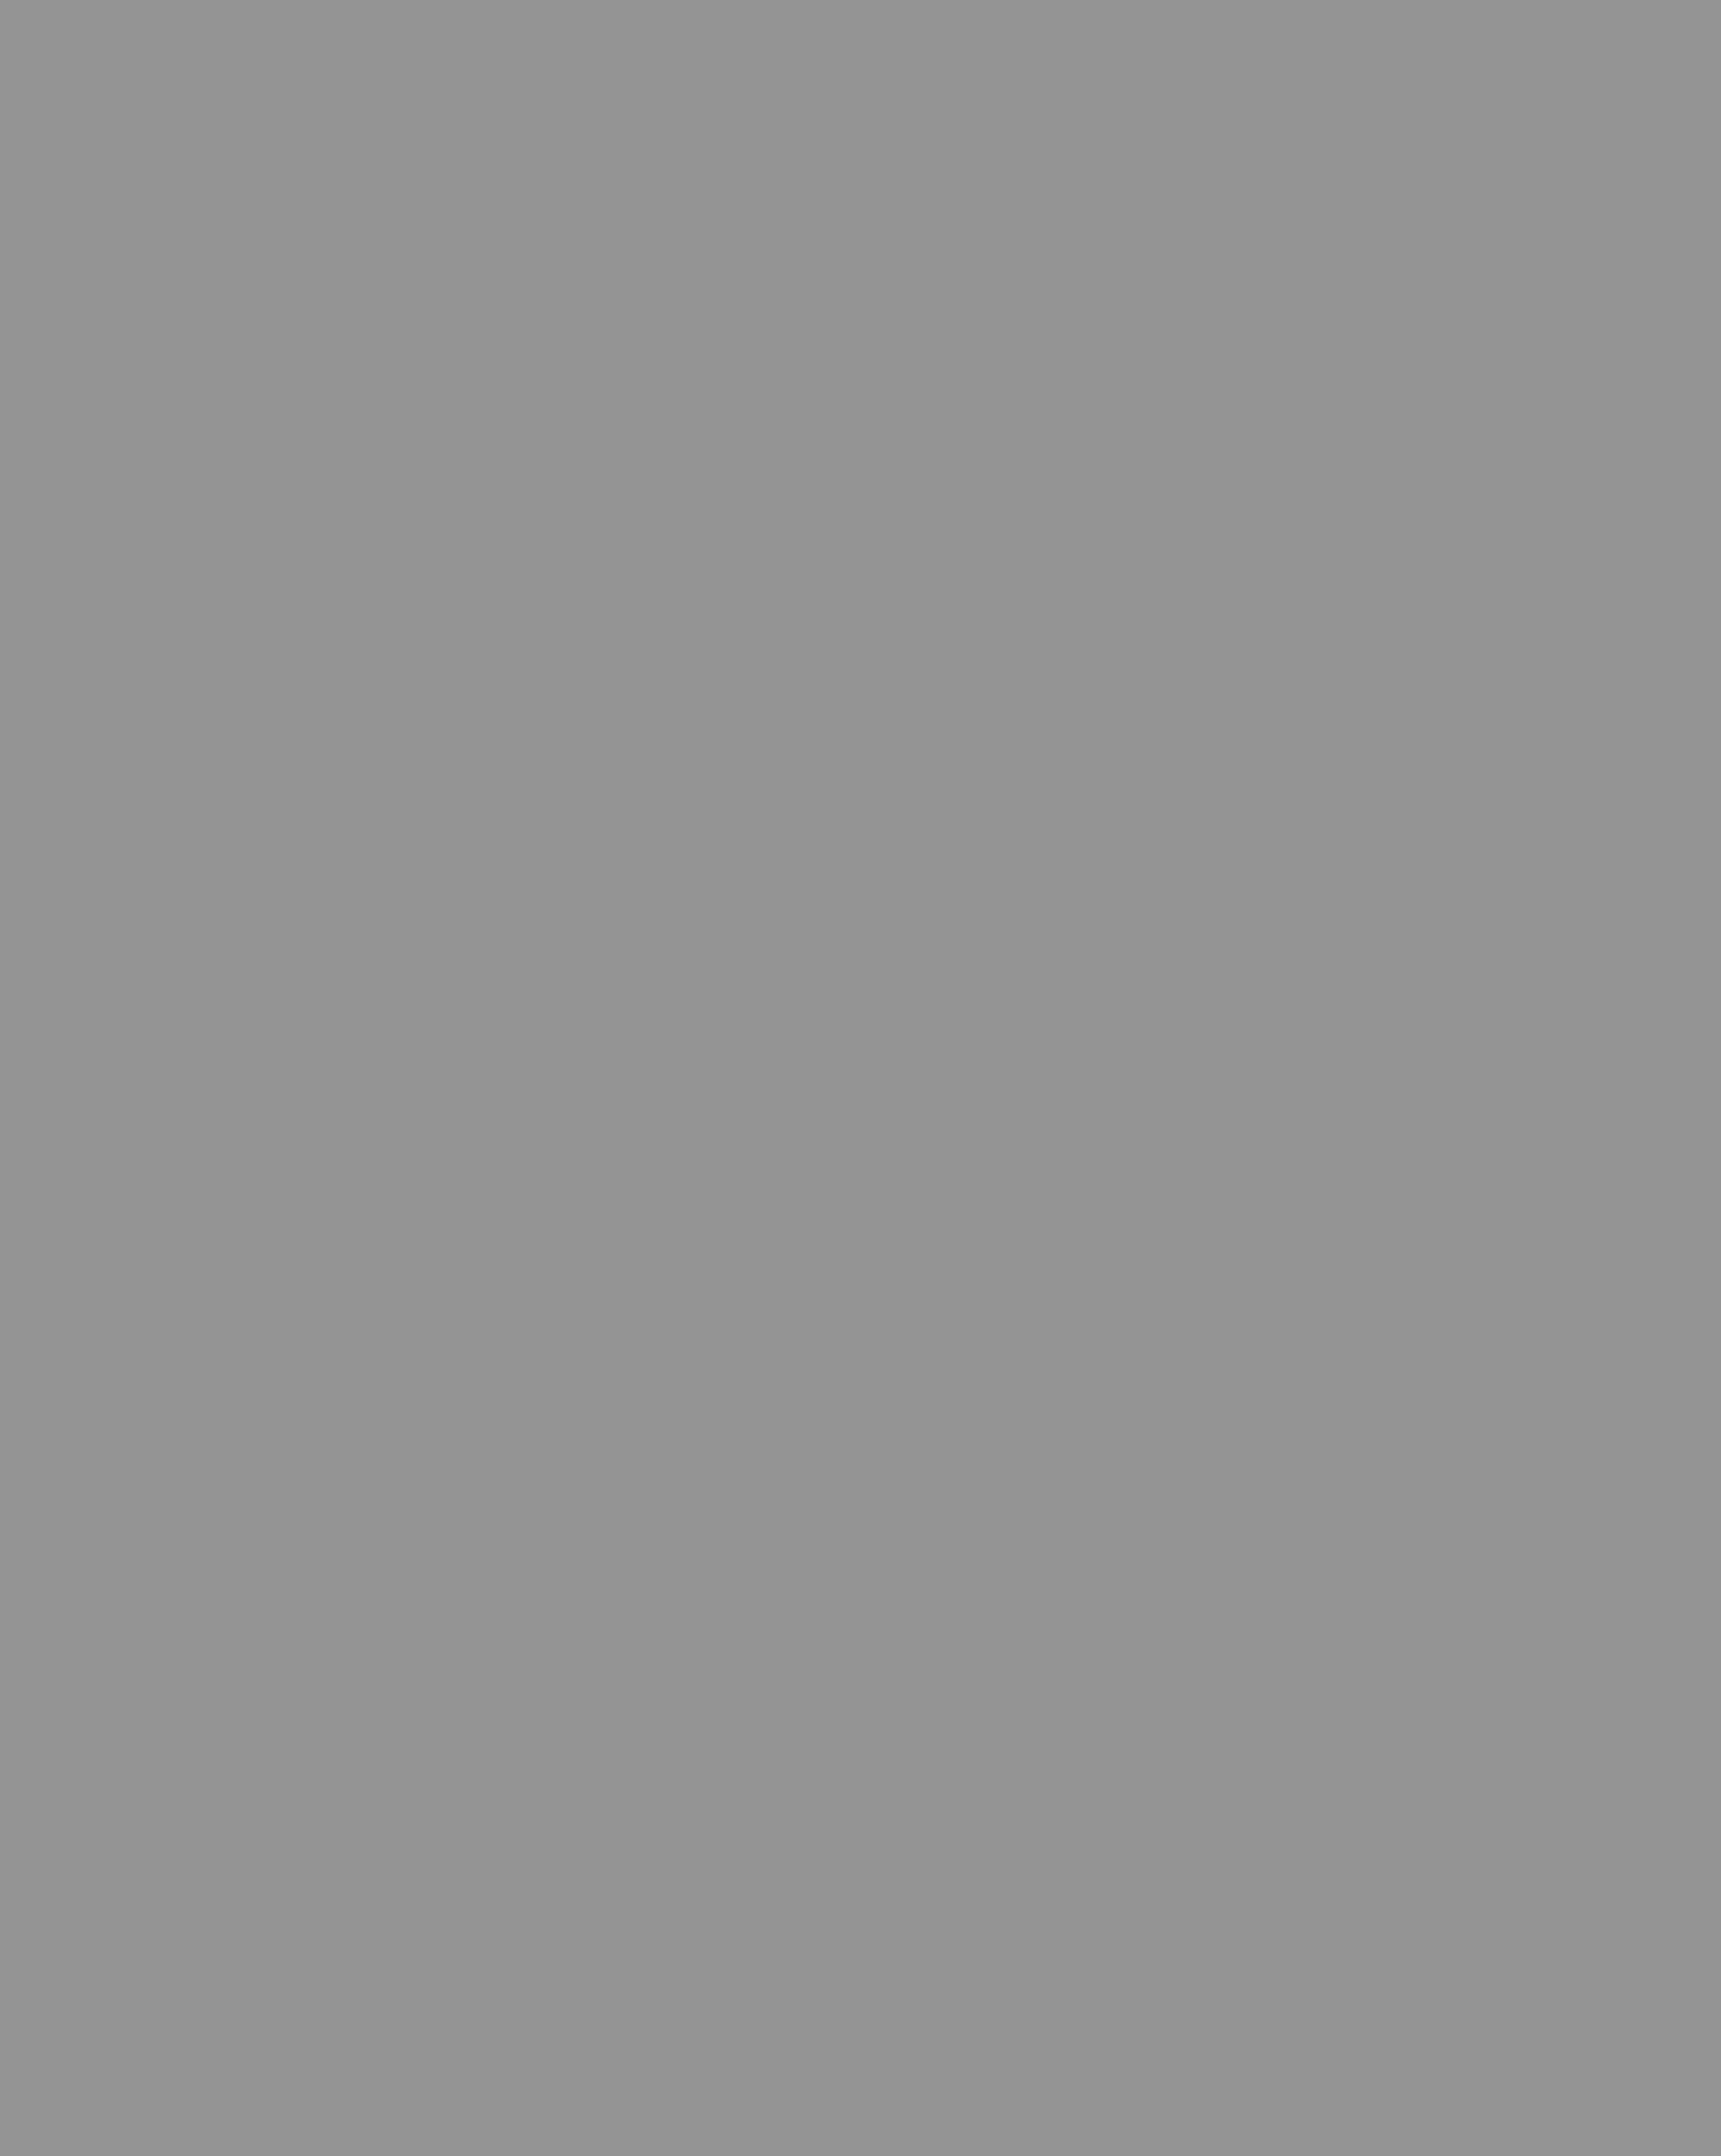 Осип Мандельштам. 1910-е годы. Фотография: Музей «Анна Ахматова. Серебряный век», Санкт-Петербург